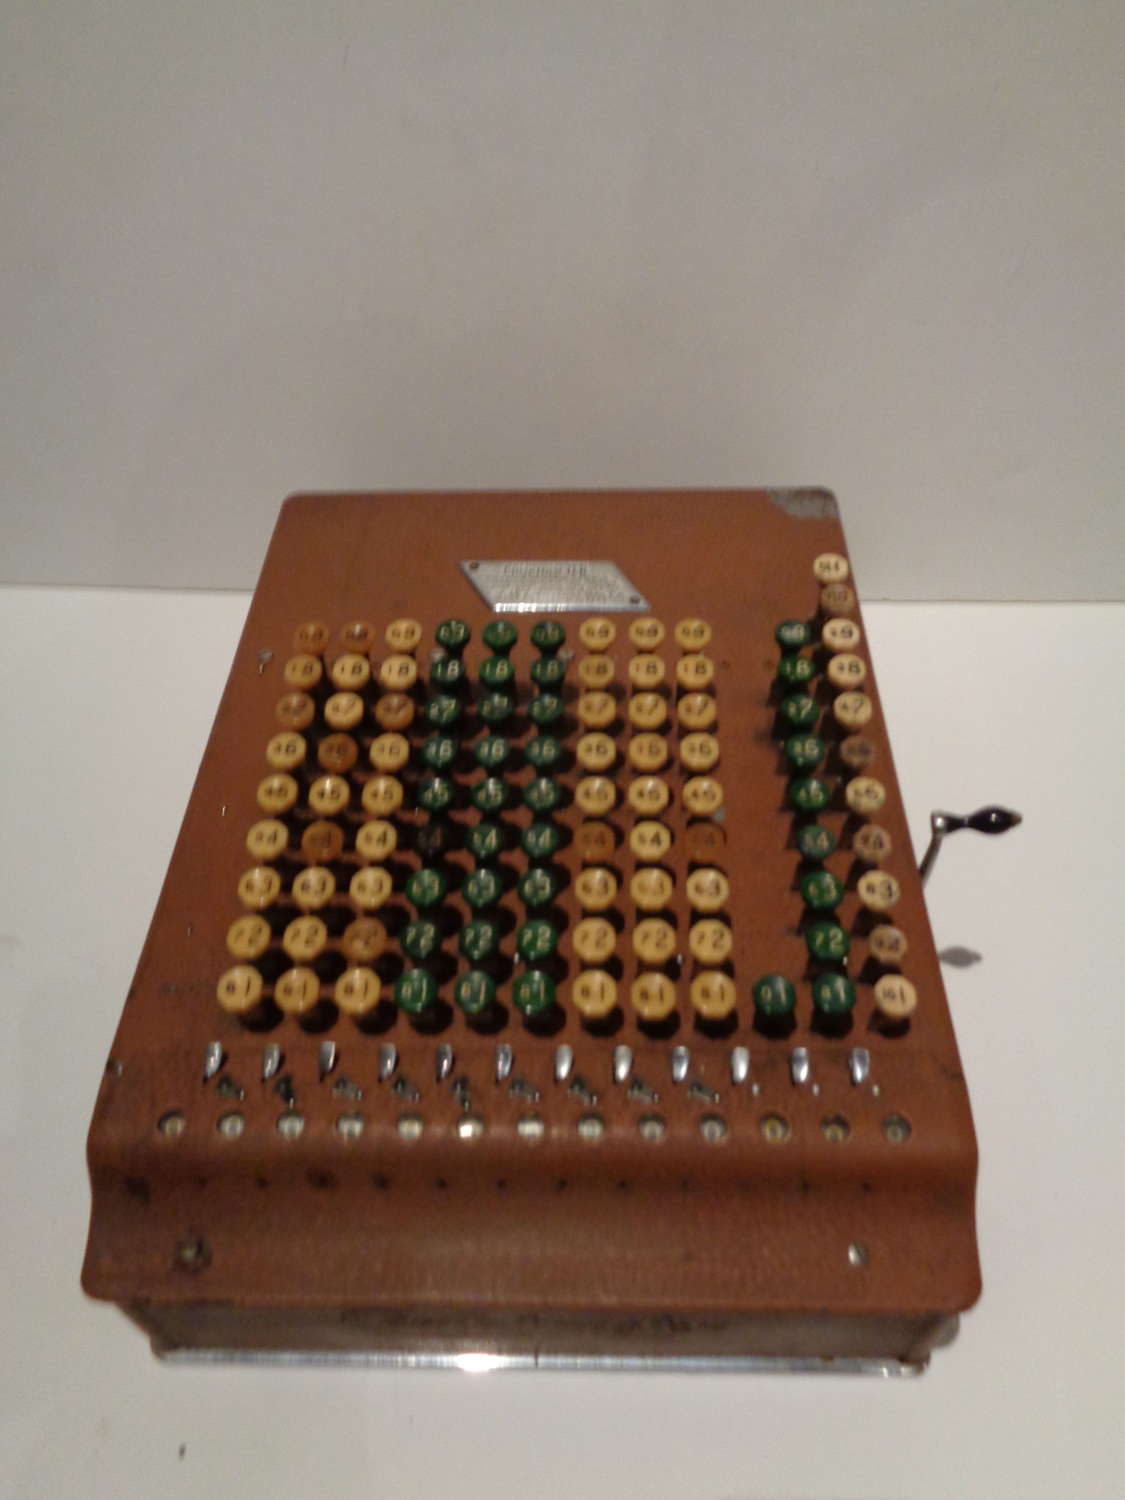 Antique Comptometer - Felt & Tarrant Mfg Co. c1920's